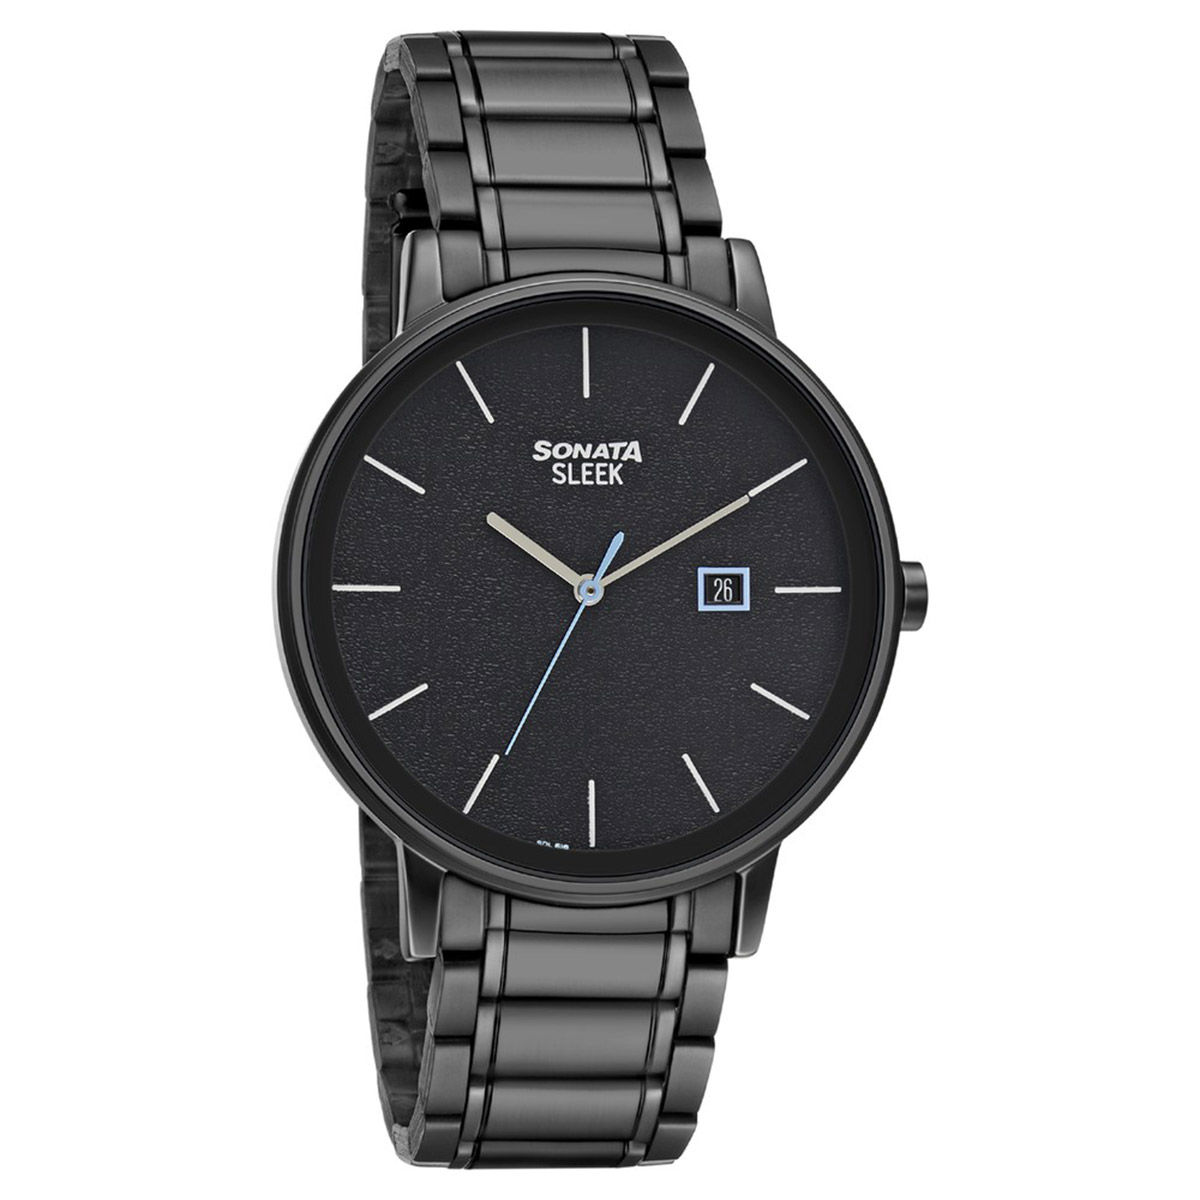 Sonata SLEEK 4.0 NP7131NM02 Black Dial Analog watch for Men